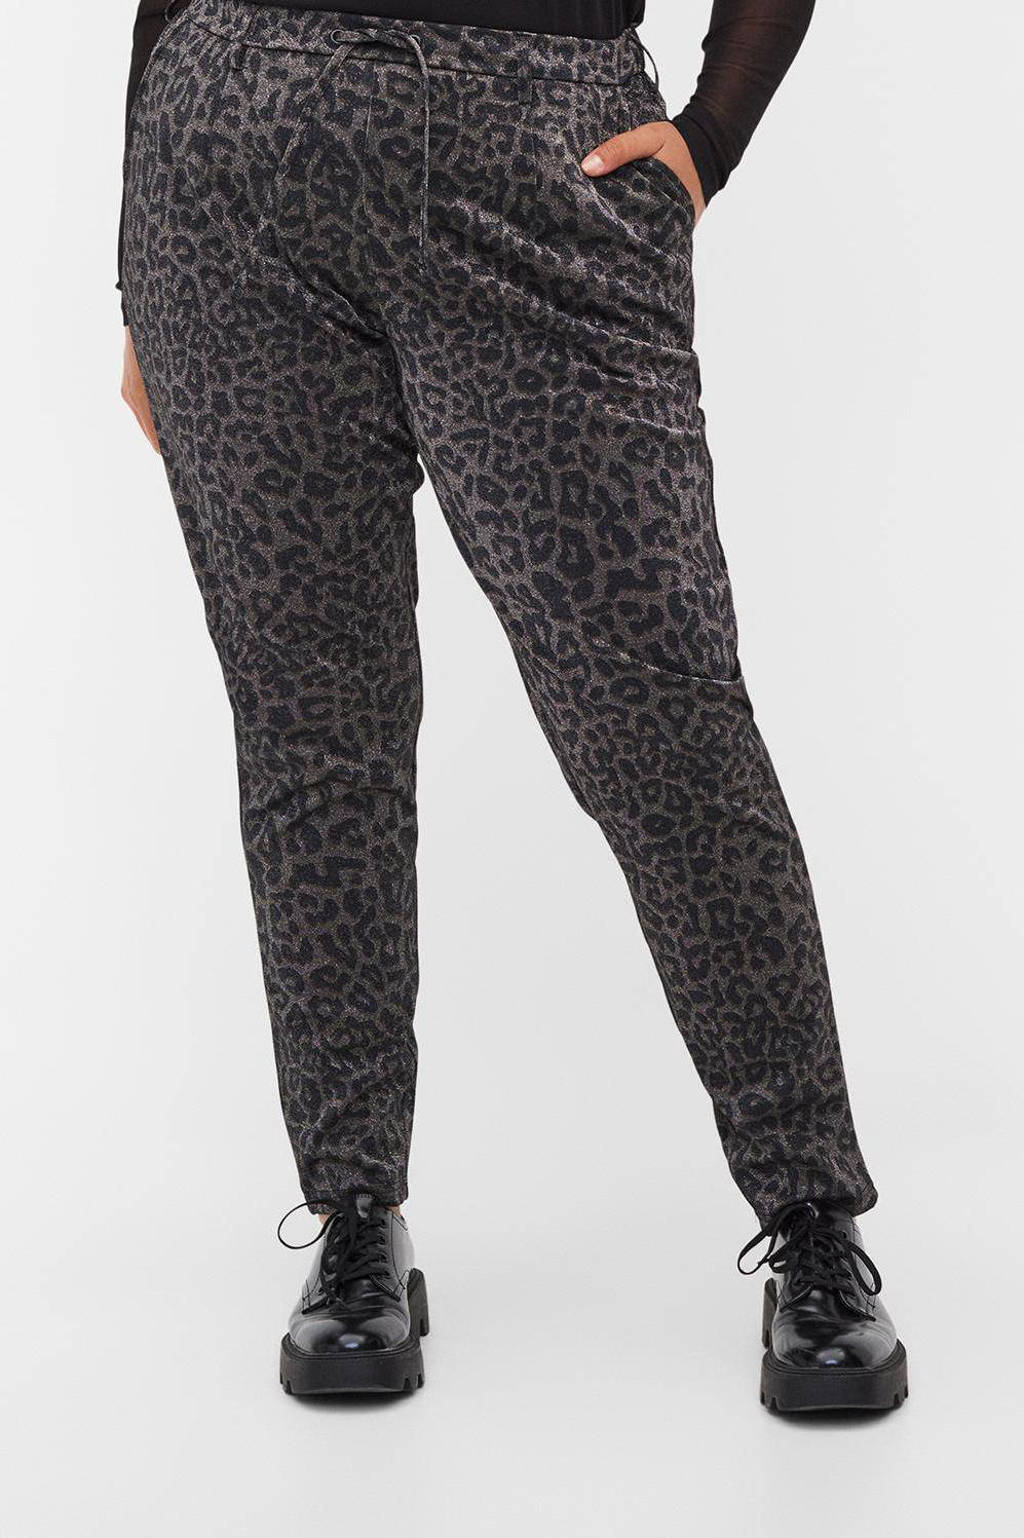 Olijfgroen, bruin en zwarte dames Zizzi high waist slim fit broek van polyester met elastische tailleband met koord en panterprint